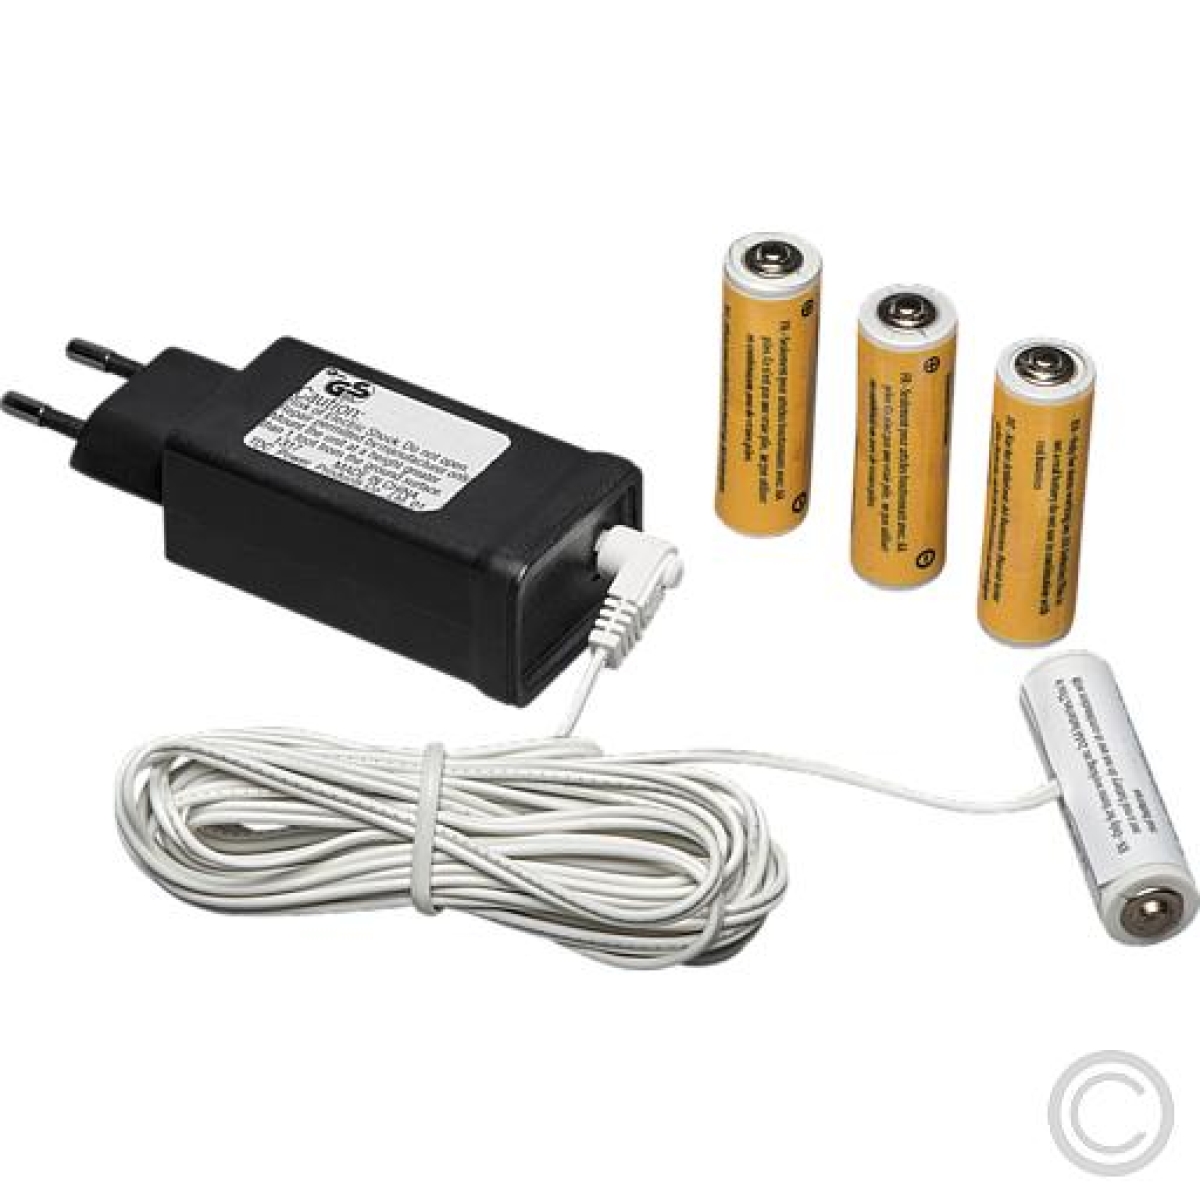 KonstsmideNetzadapter Steckernetzteil 230V für batteriebetriebene Artikel 4 Mignon V=/0,5A 5164-000Artikel-Nr: 830940